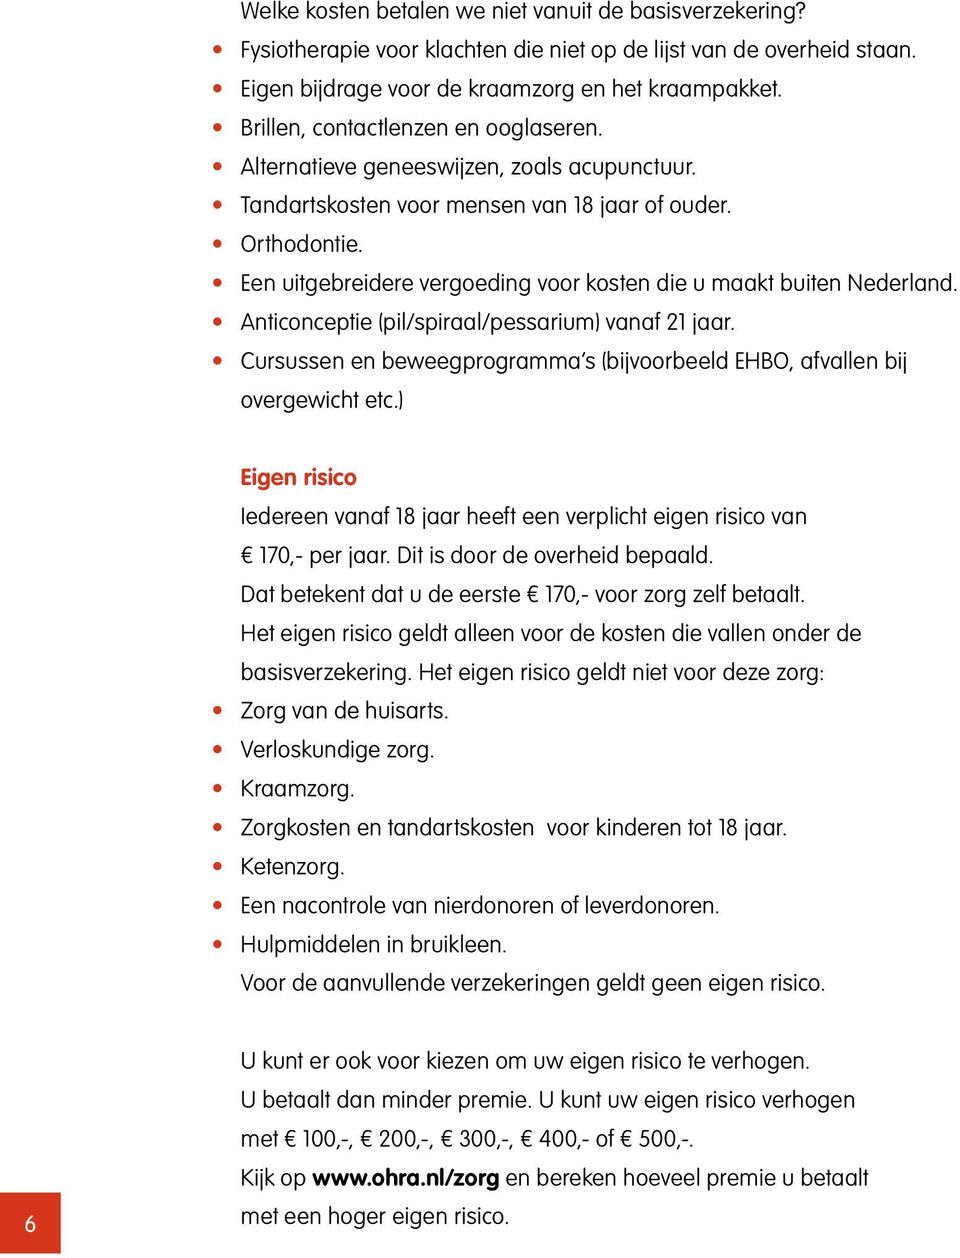 Een uitgebreidere vergoeding voor kosten die u maakt buiten Nederland. Anticonceptie (pil/spiraal/pessarium) vanaf 21 jaar.